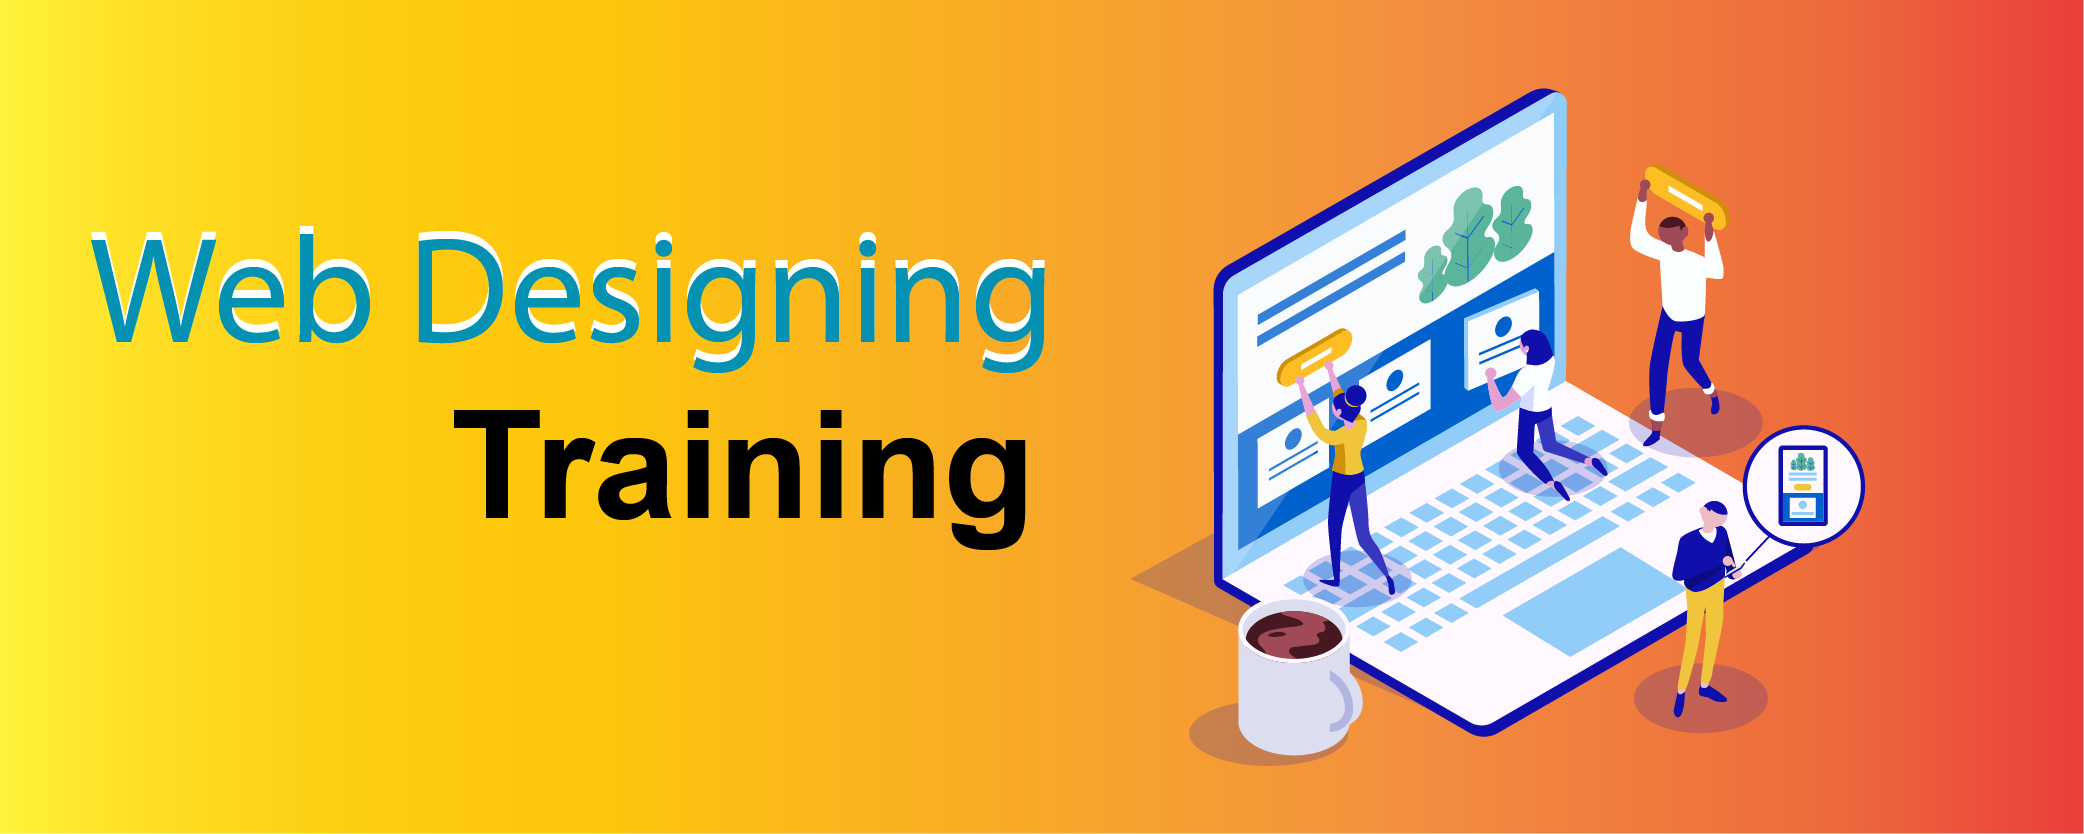 web designing course in Bangalore - Designing courses